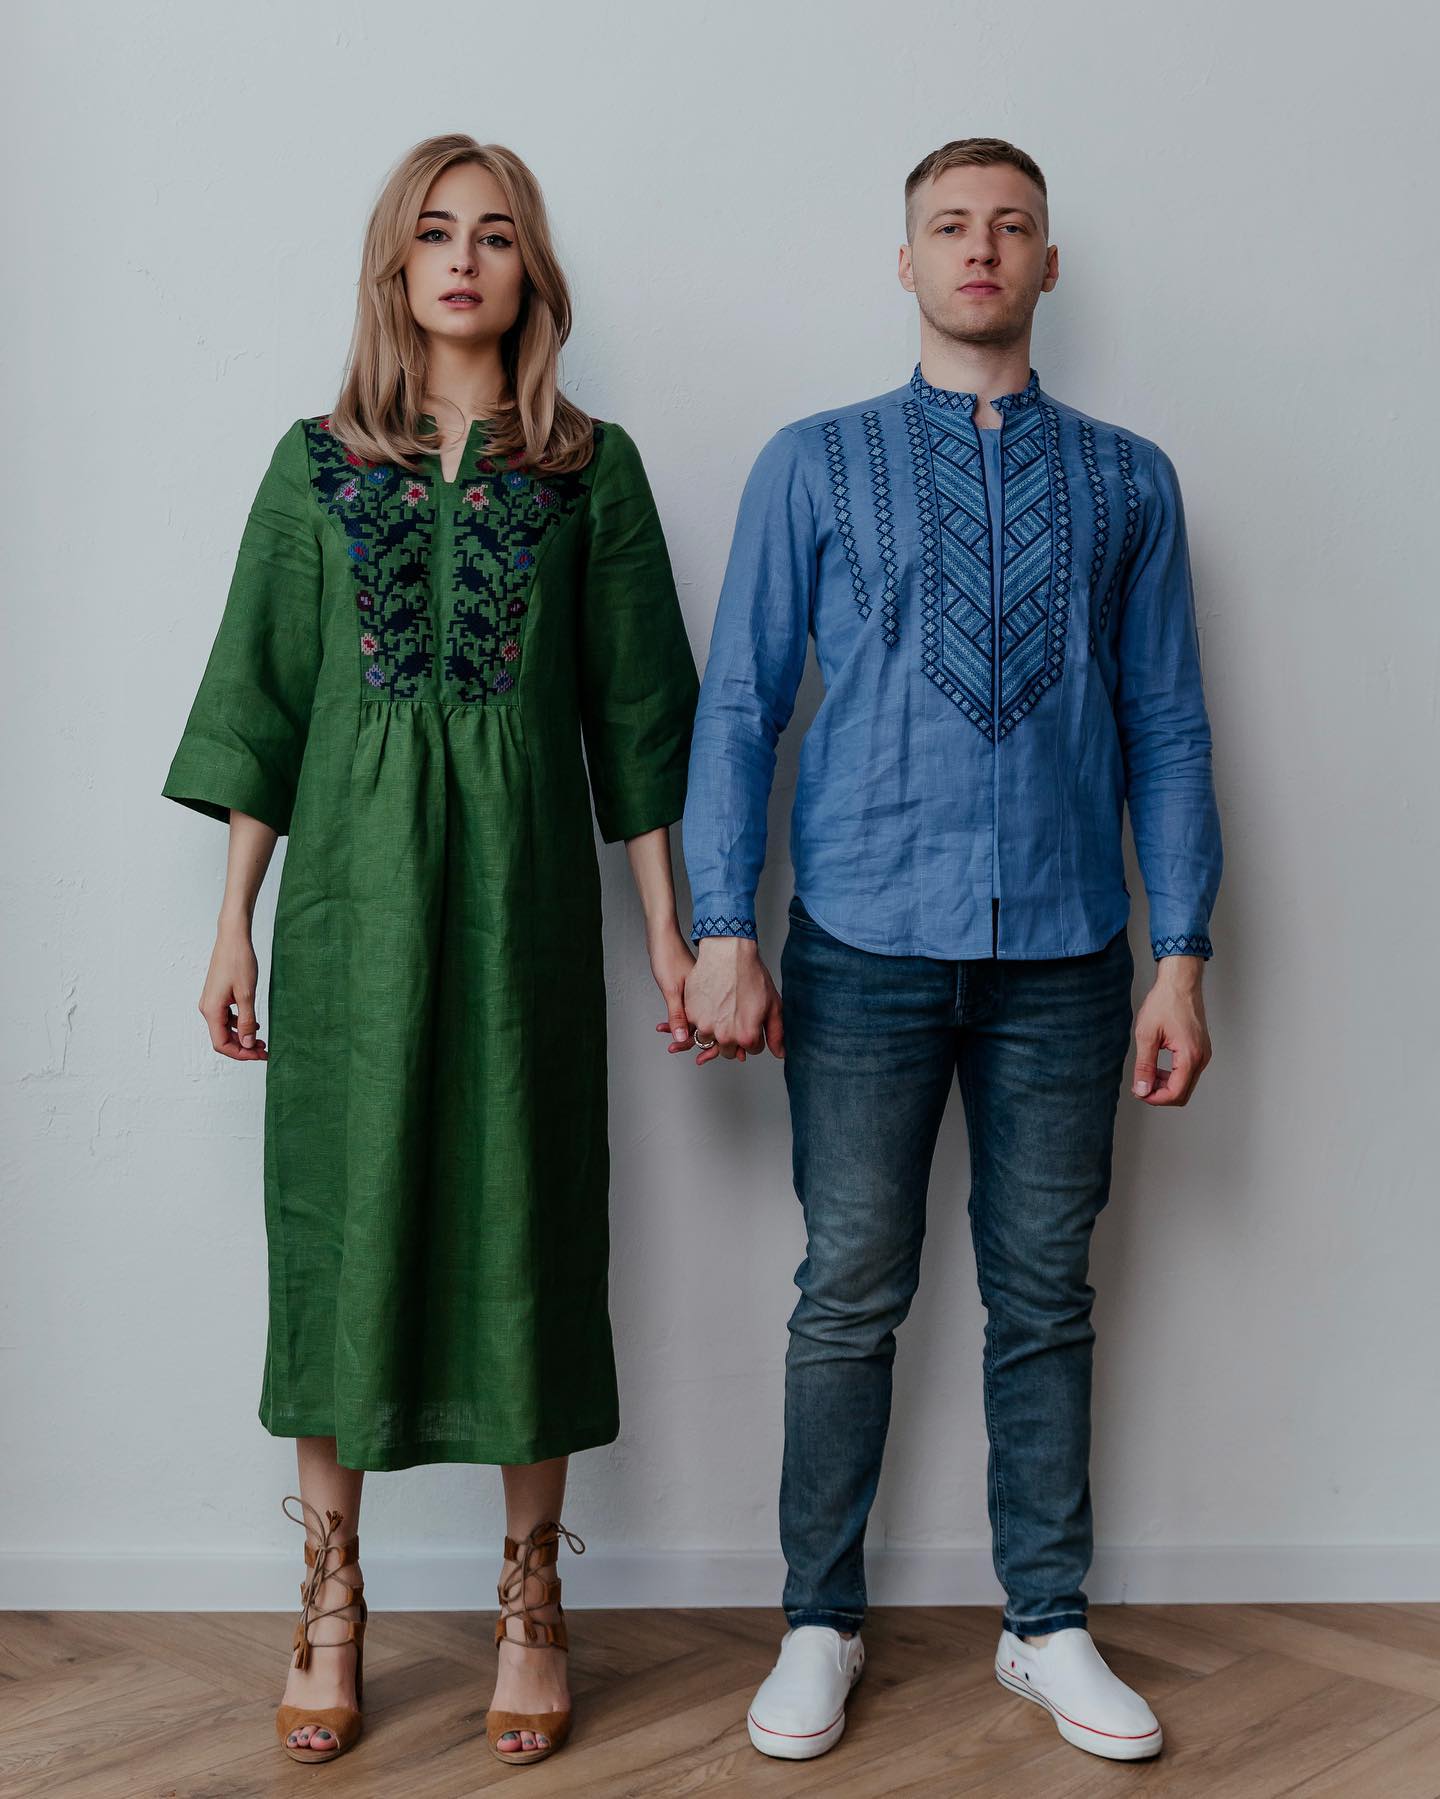 Розпалася ще одна відома пара: українські актори повідомили про розлучення